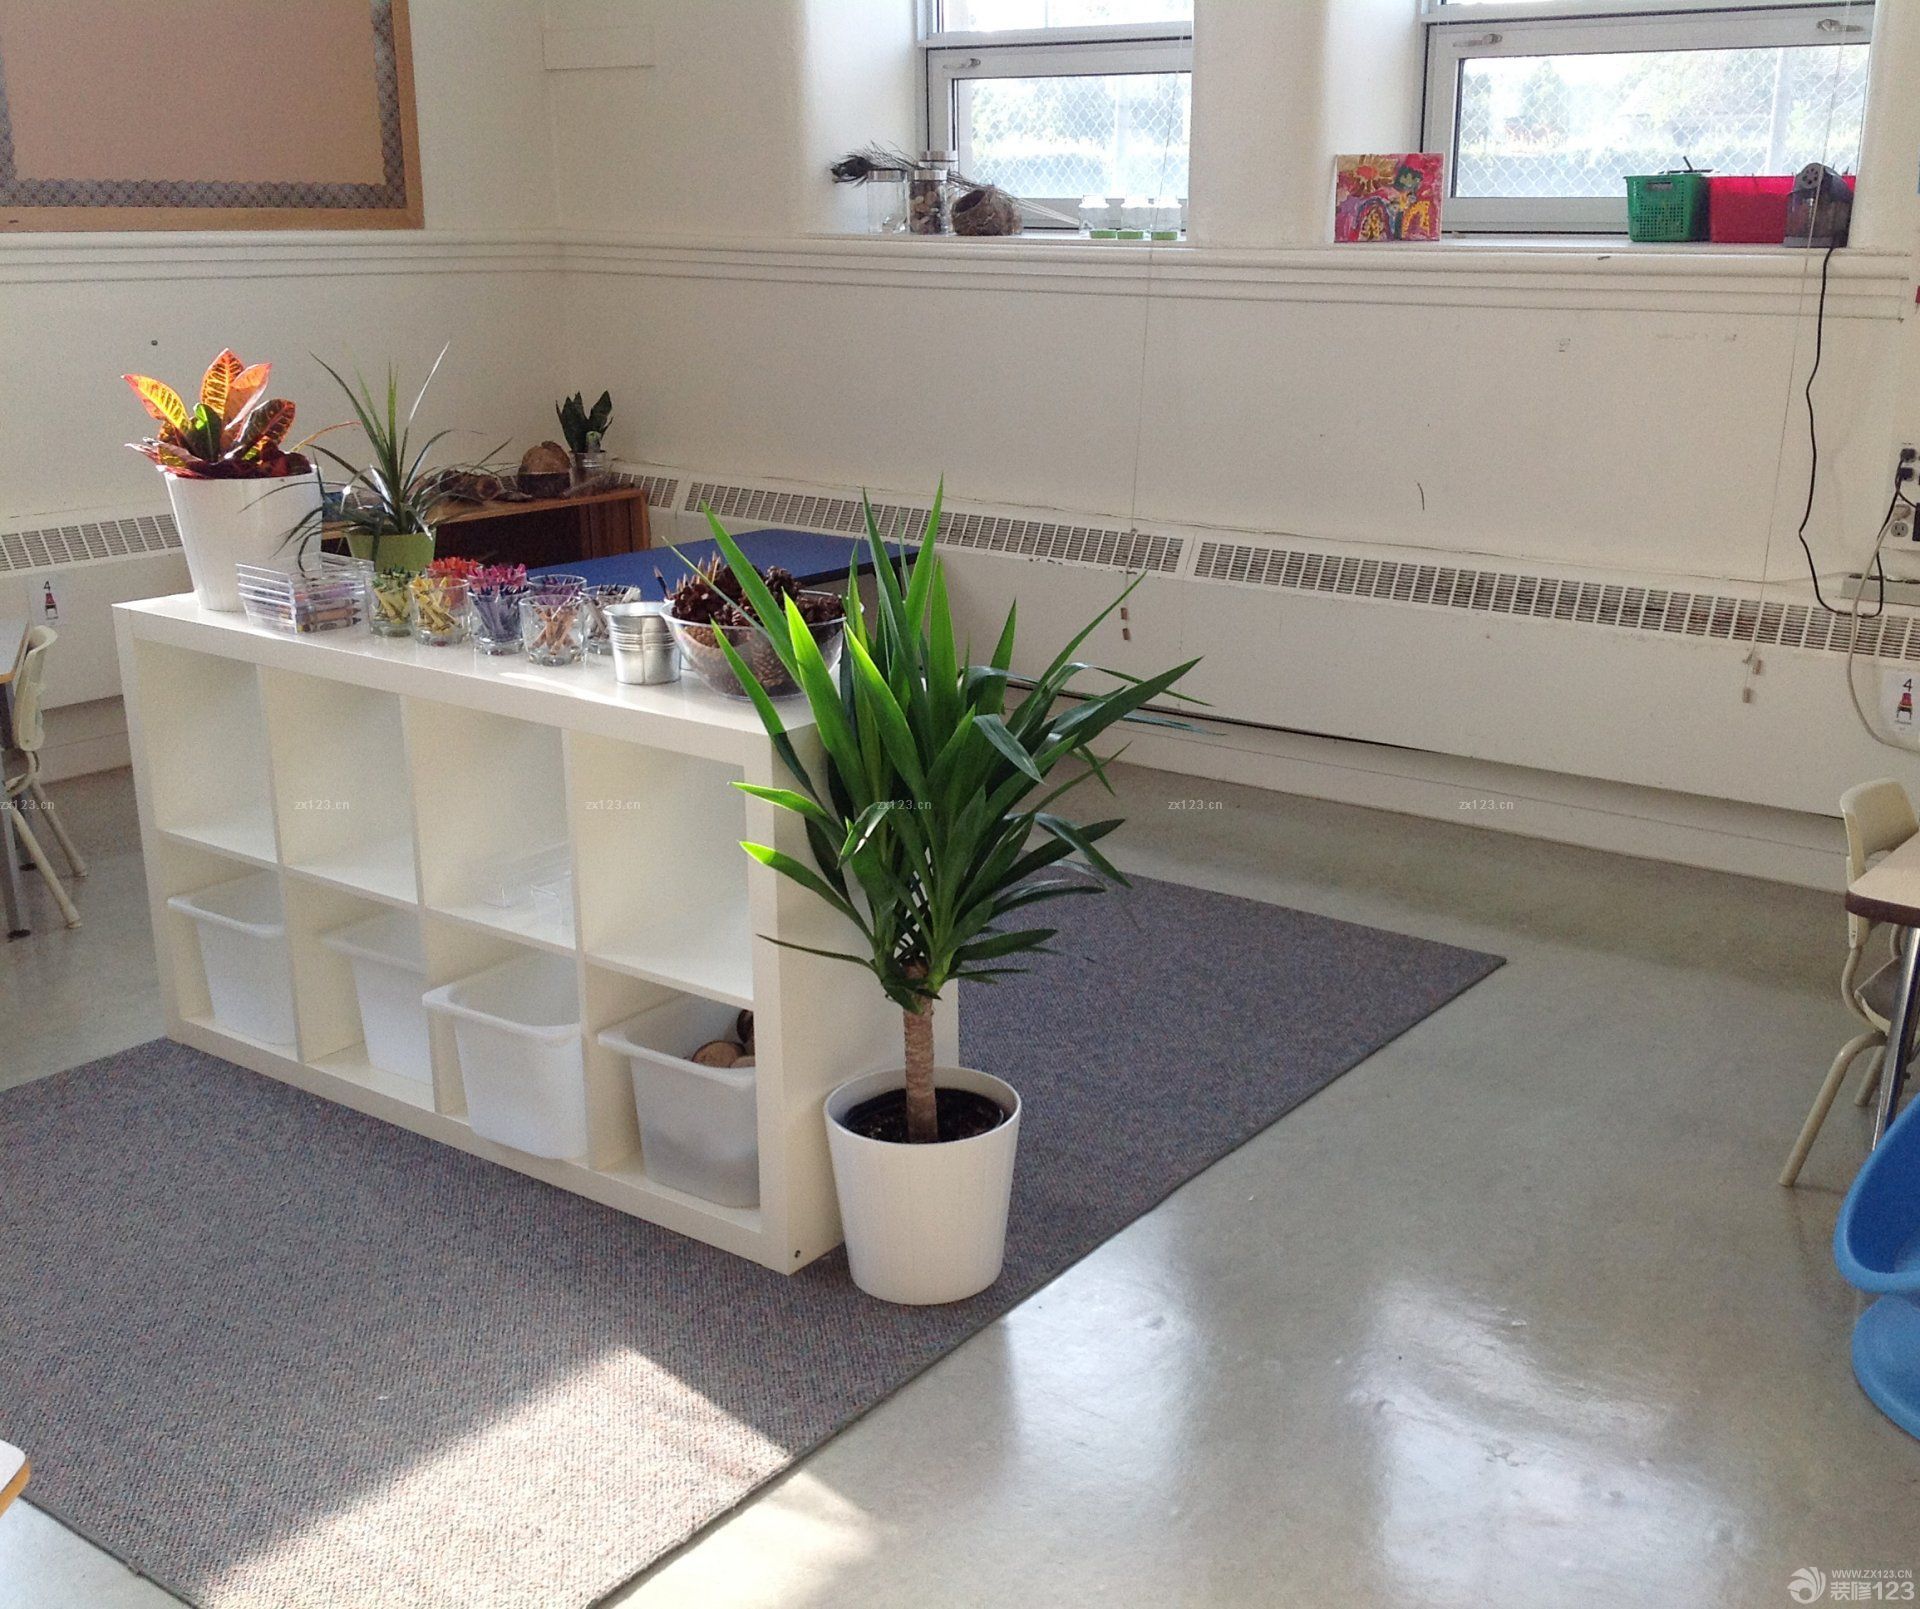 幼儿园中班教室环境布置效果图图片